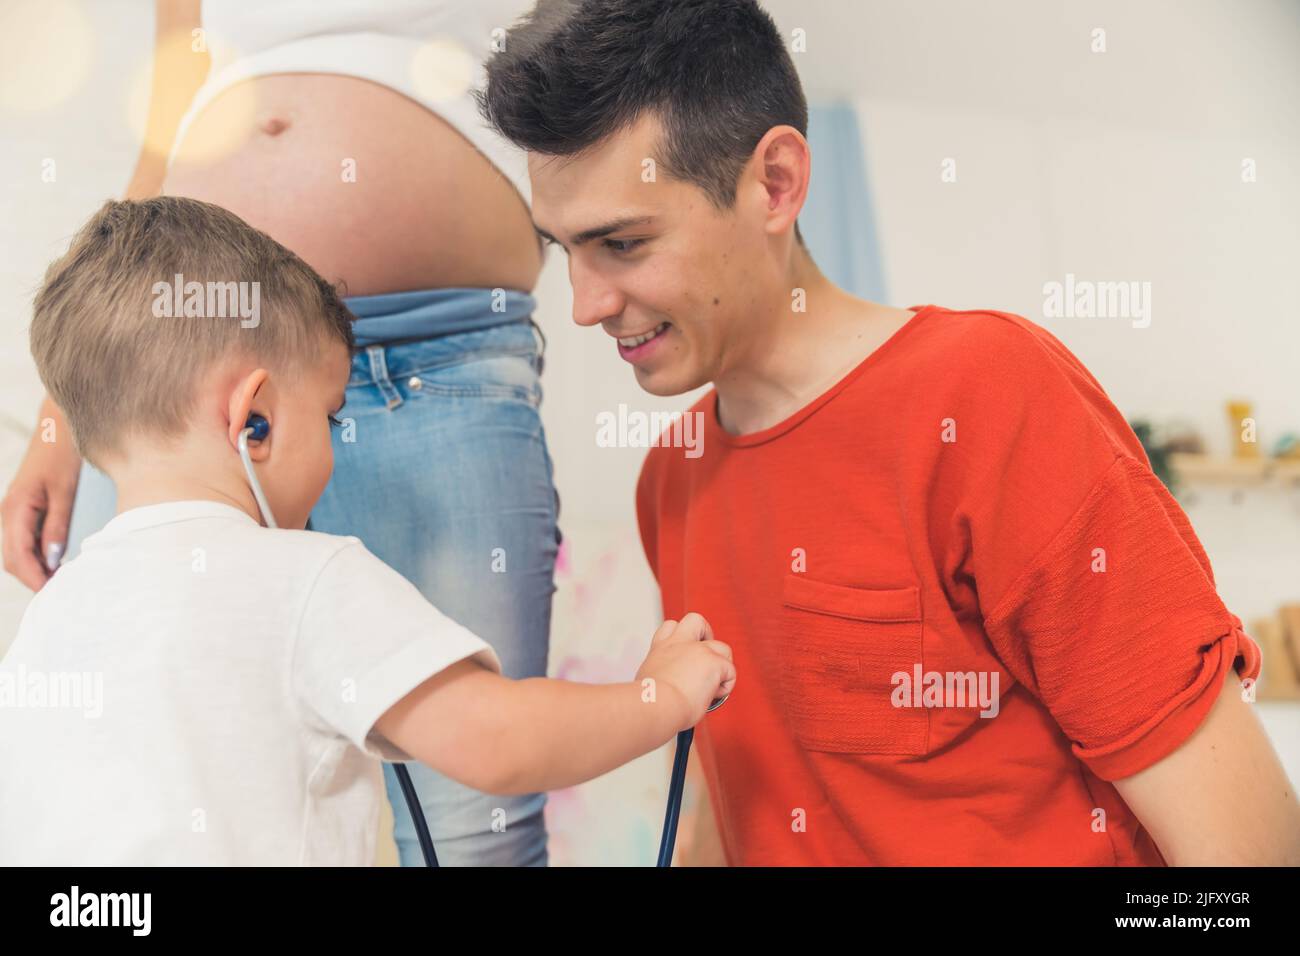 ragazzino che usa uno stetoscopio per ascoltare il battito del papà. Foto di alta qualità Foto Stock